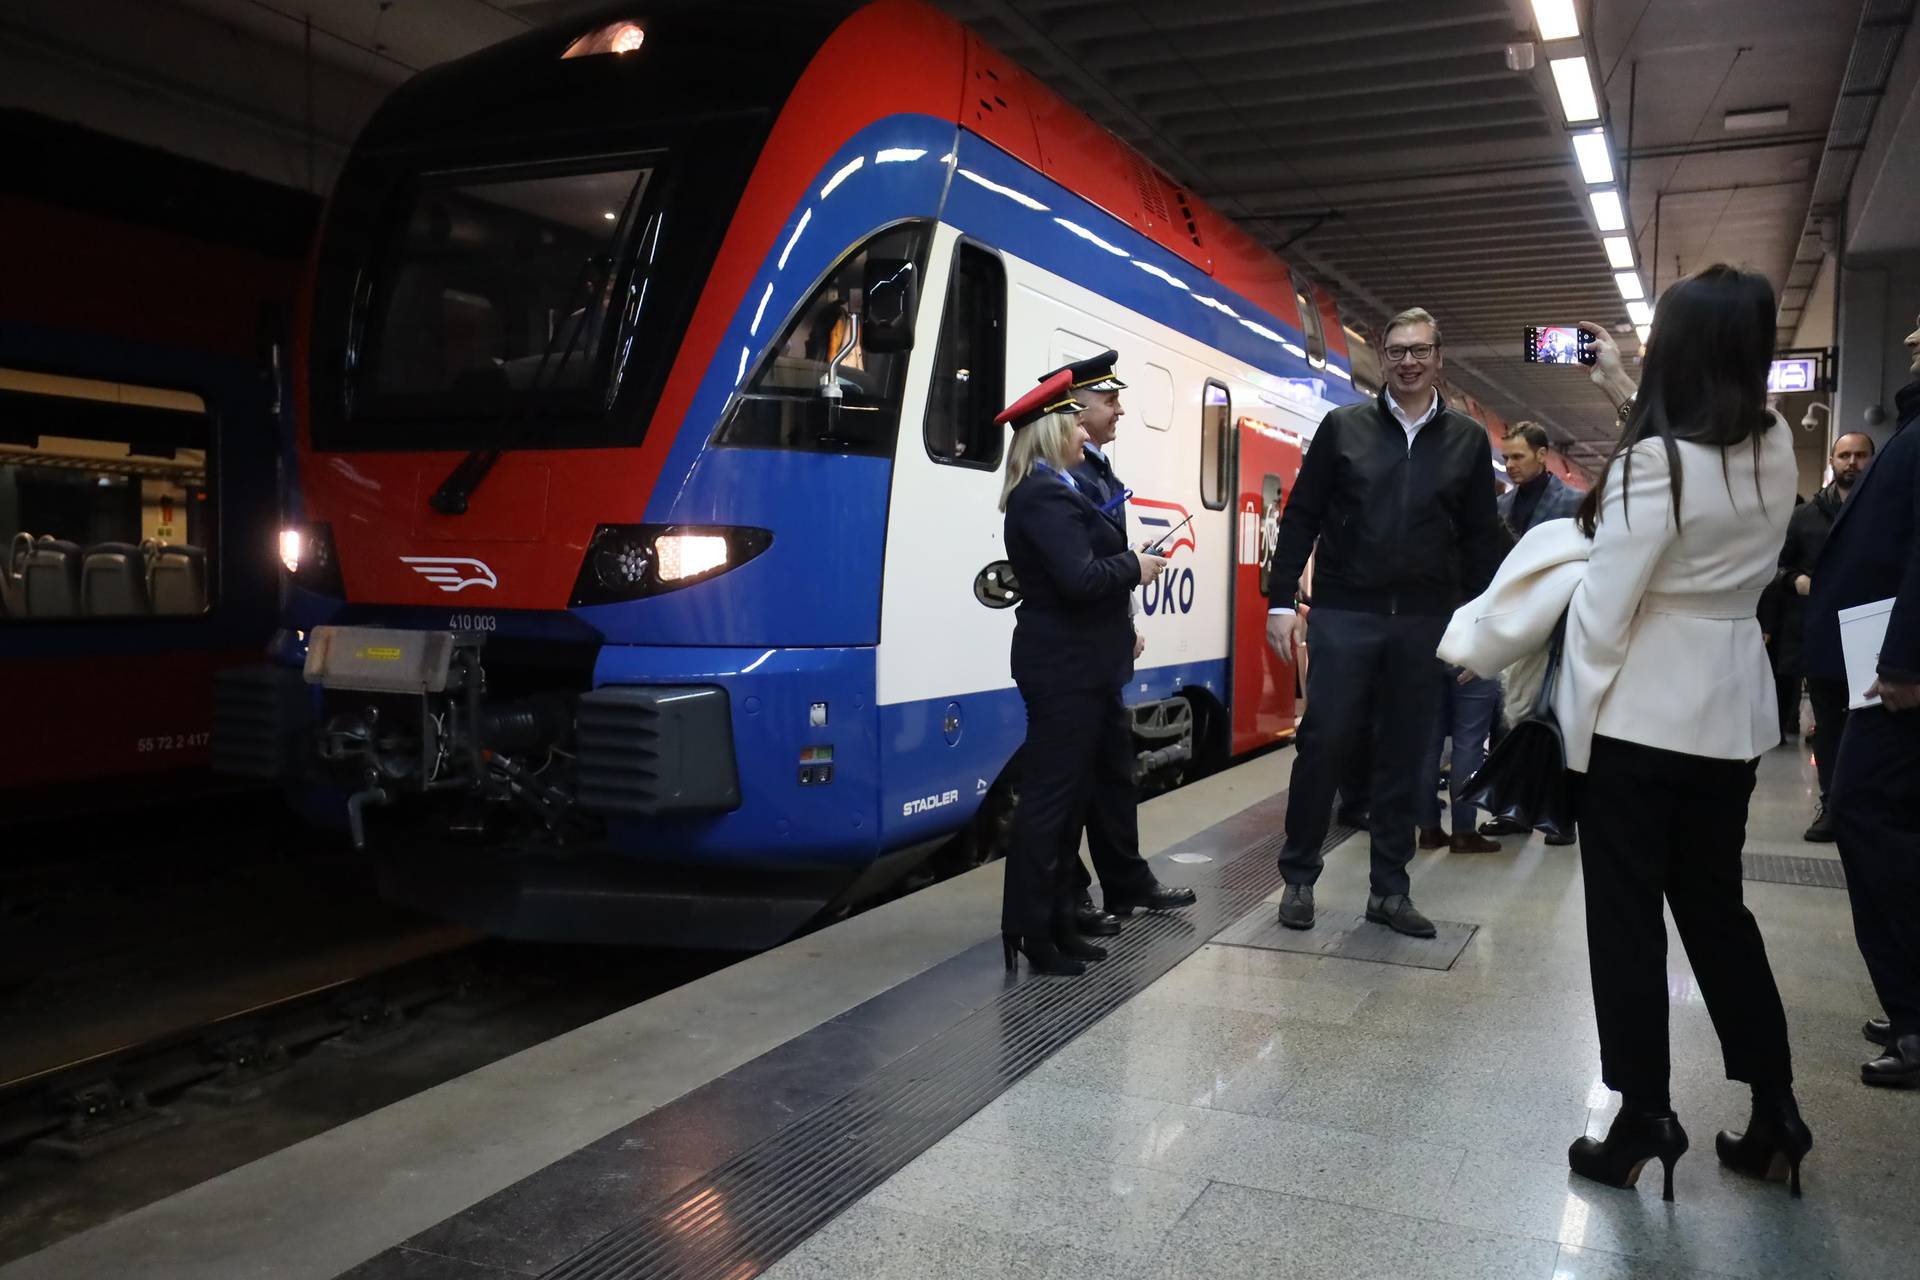 Beograd: Aleksandar Vu?i? i Viktor Orban na puštanju dionice pruge Beograd - Budimpešta 